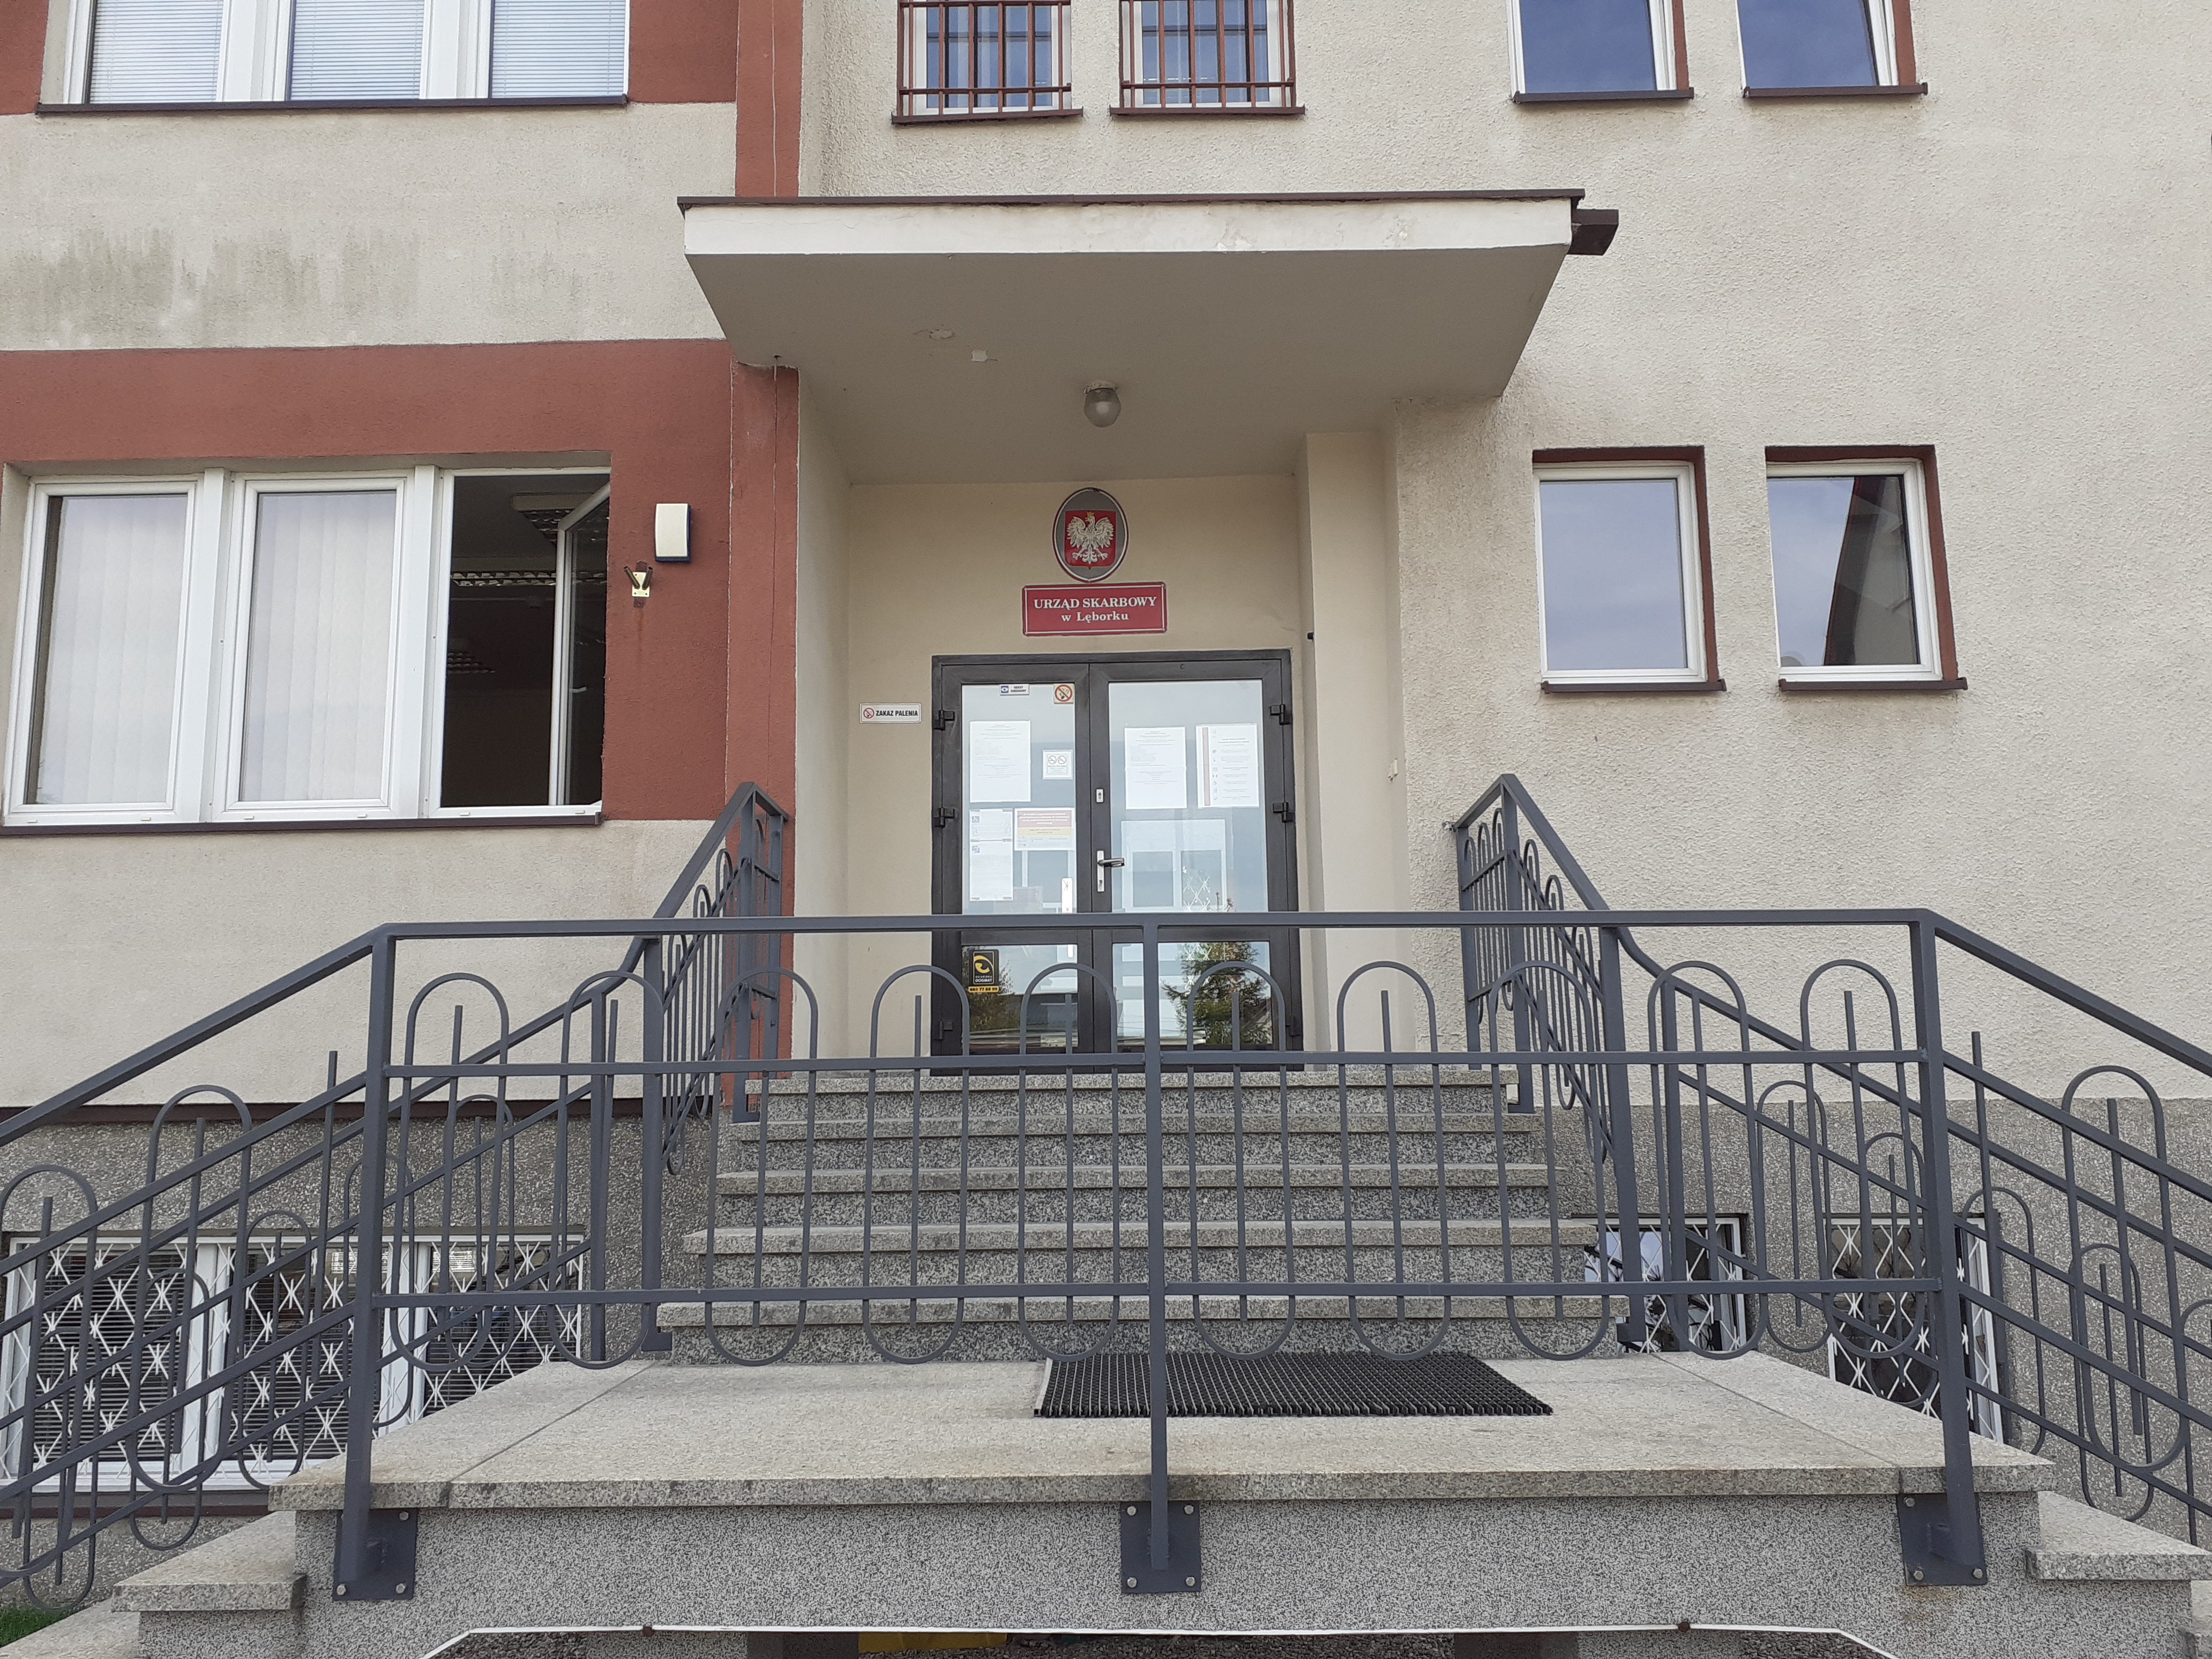 Wejście po schodach do budynku, w którym mieści się siedziba Urzędu Skarbowego w Lęborku. Szaro - brązowa elewacja